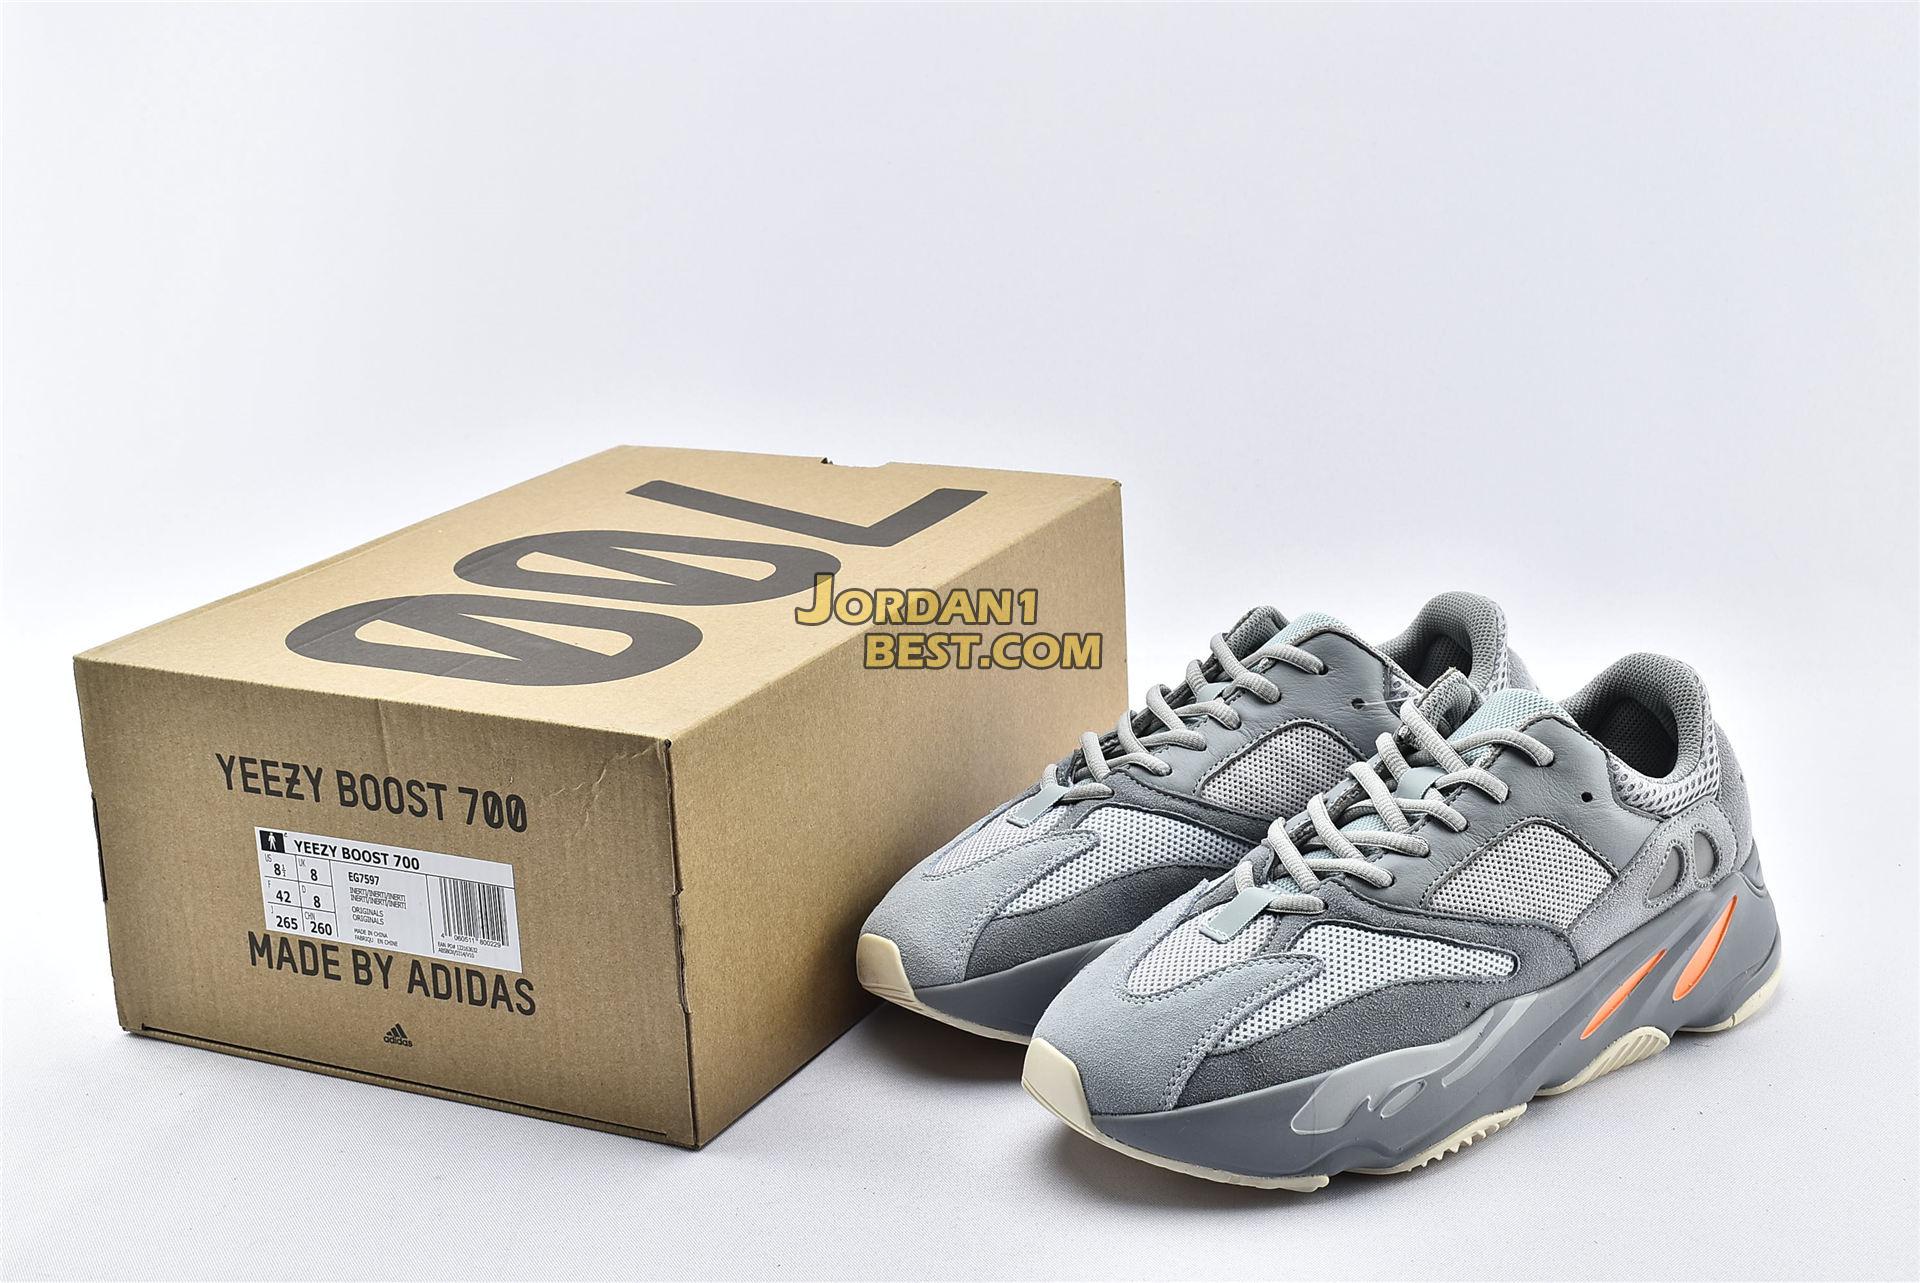 Adidas Yeezy Boost 700 "Grey-Inertia" EG7597